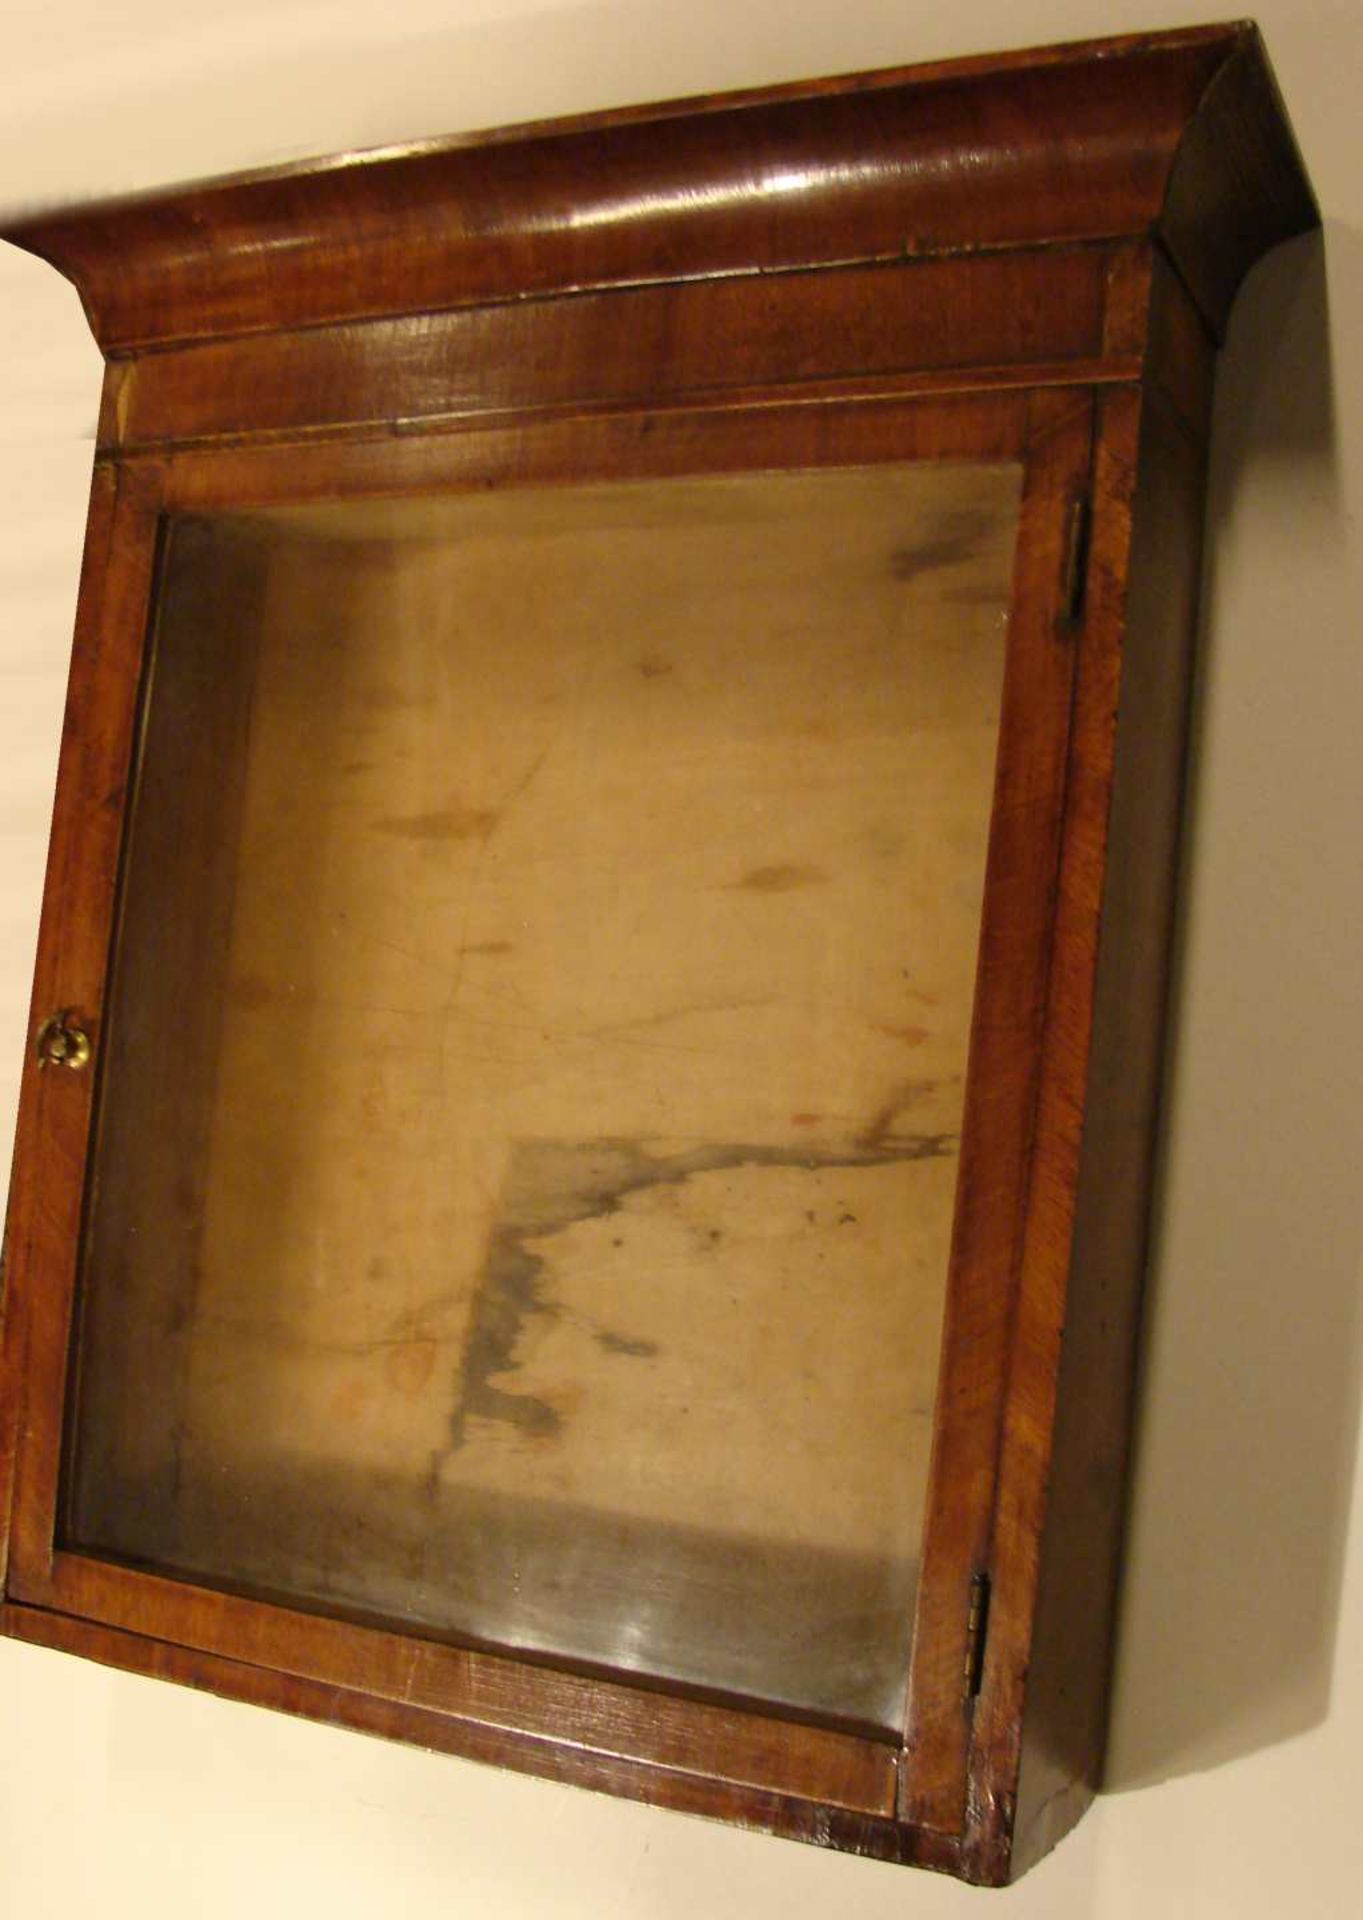 Hängeschrank, Holz, 1 Glastüre, ca. 46 x 51 cm - Bild 2 aus 2